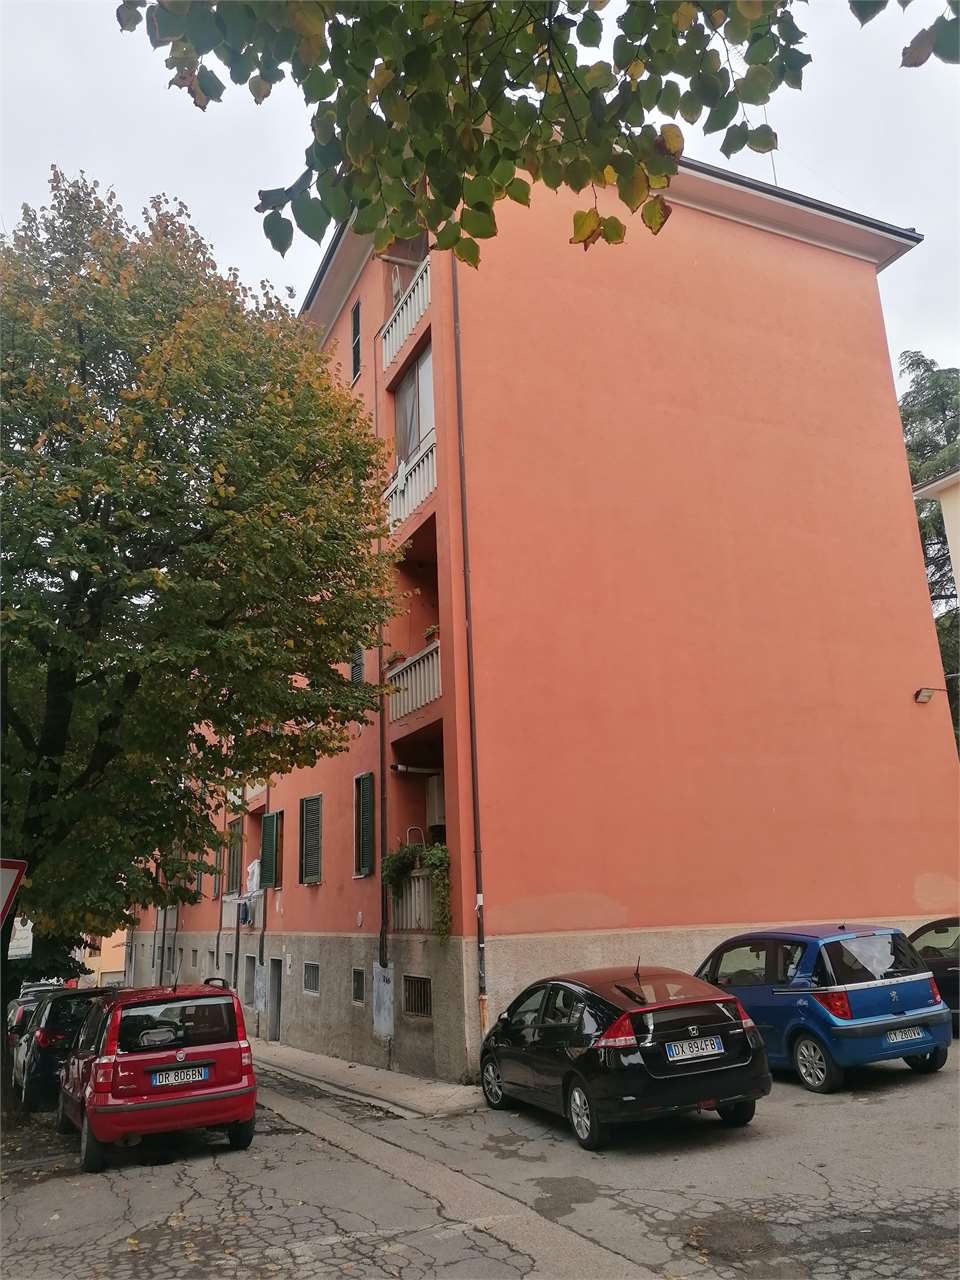 Trilocale in vendita zona Cortonese Perugia